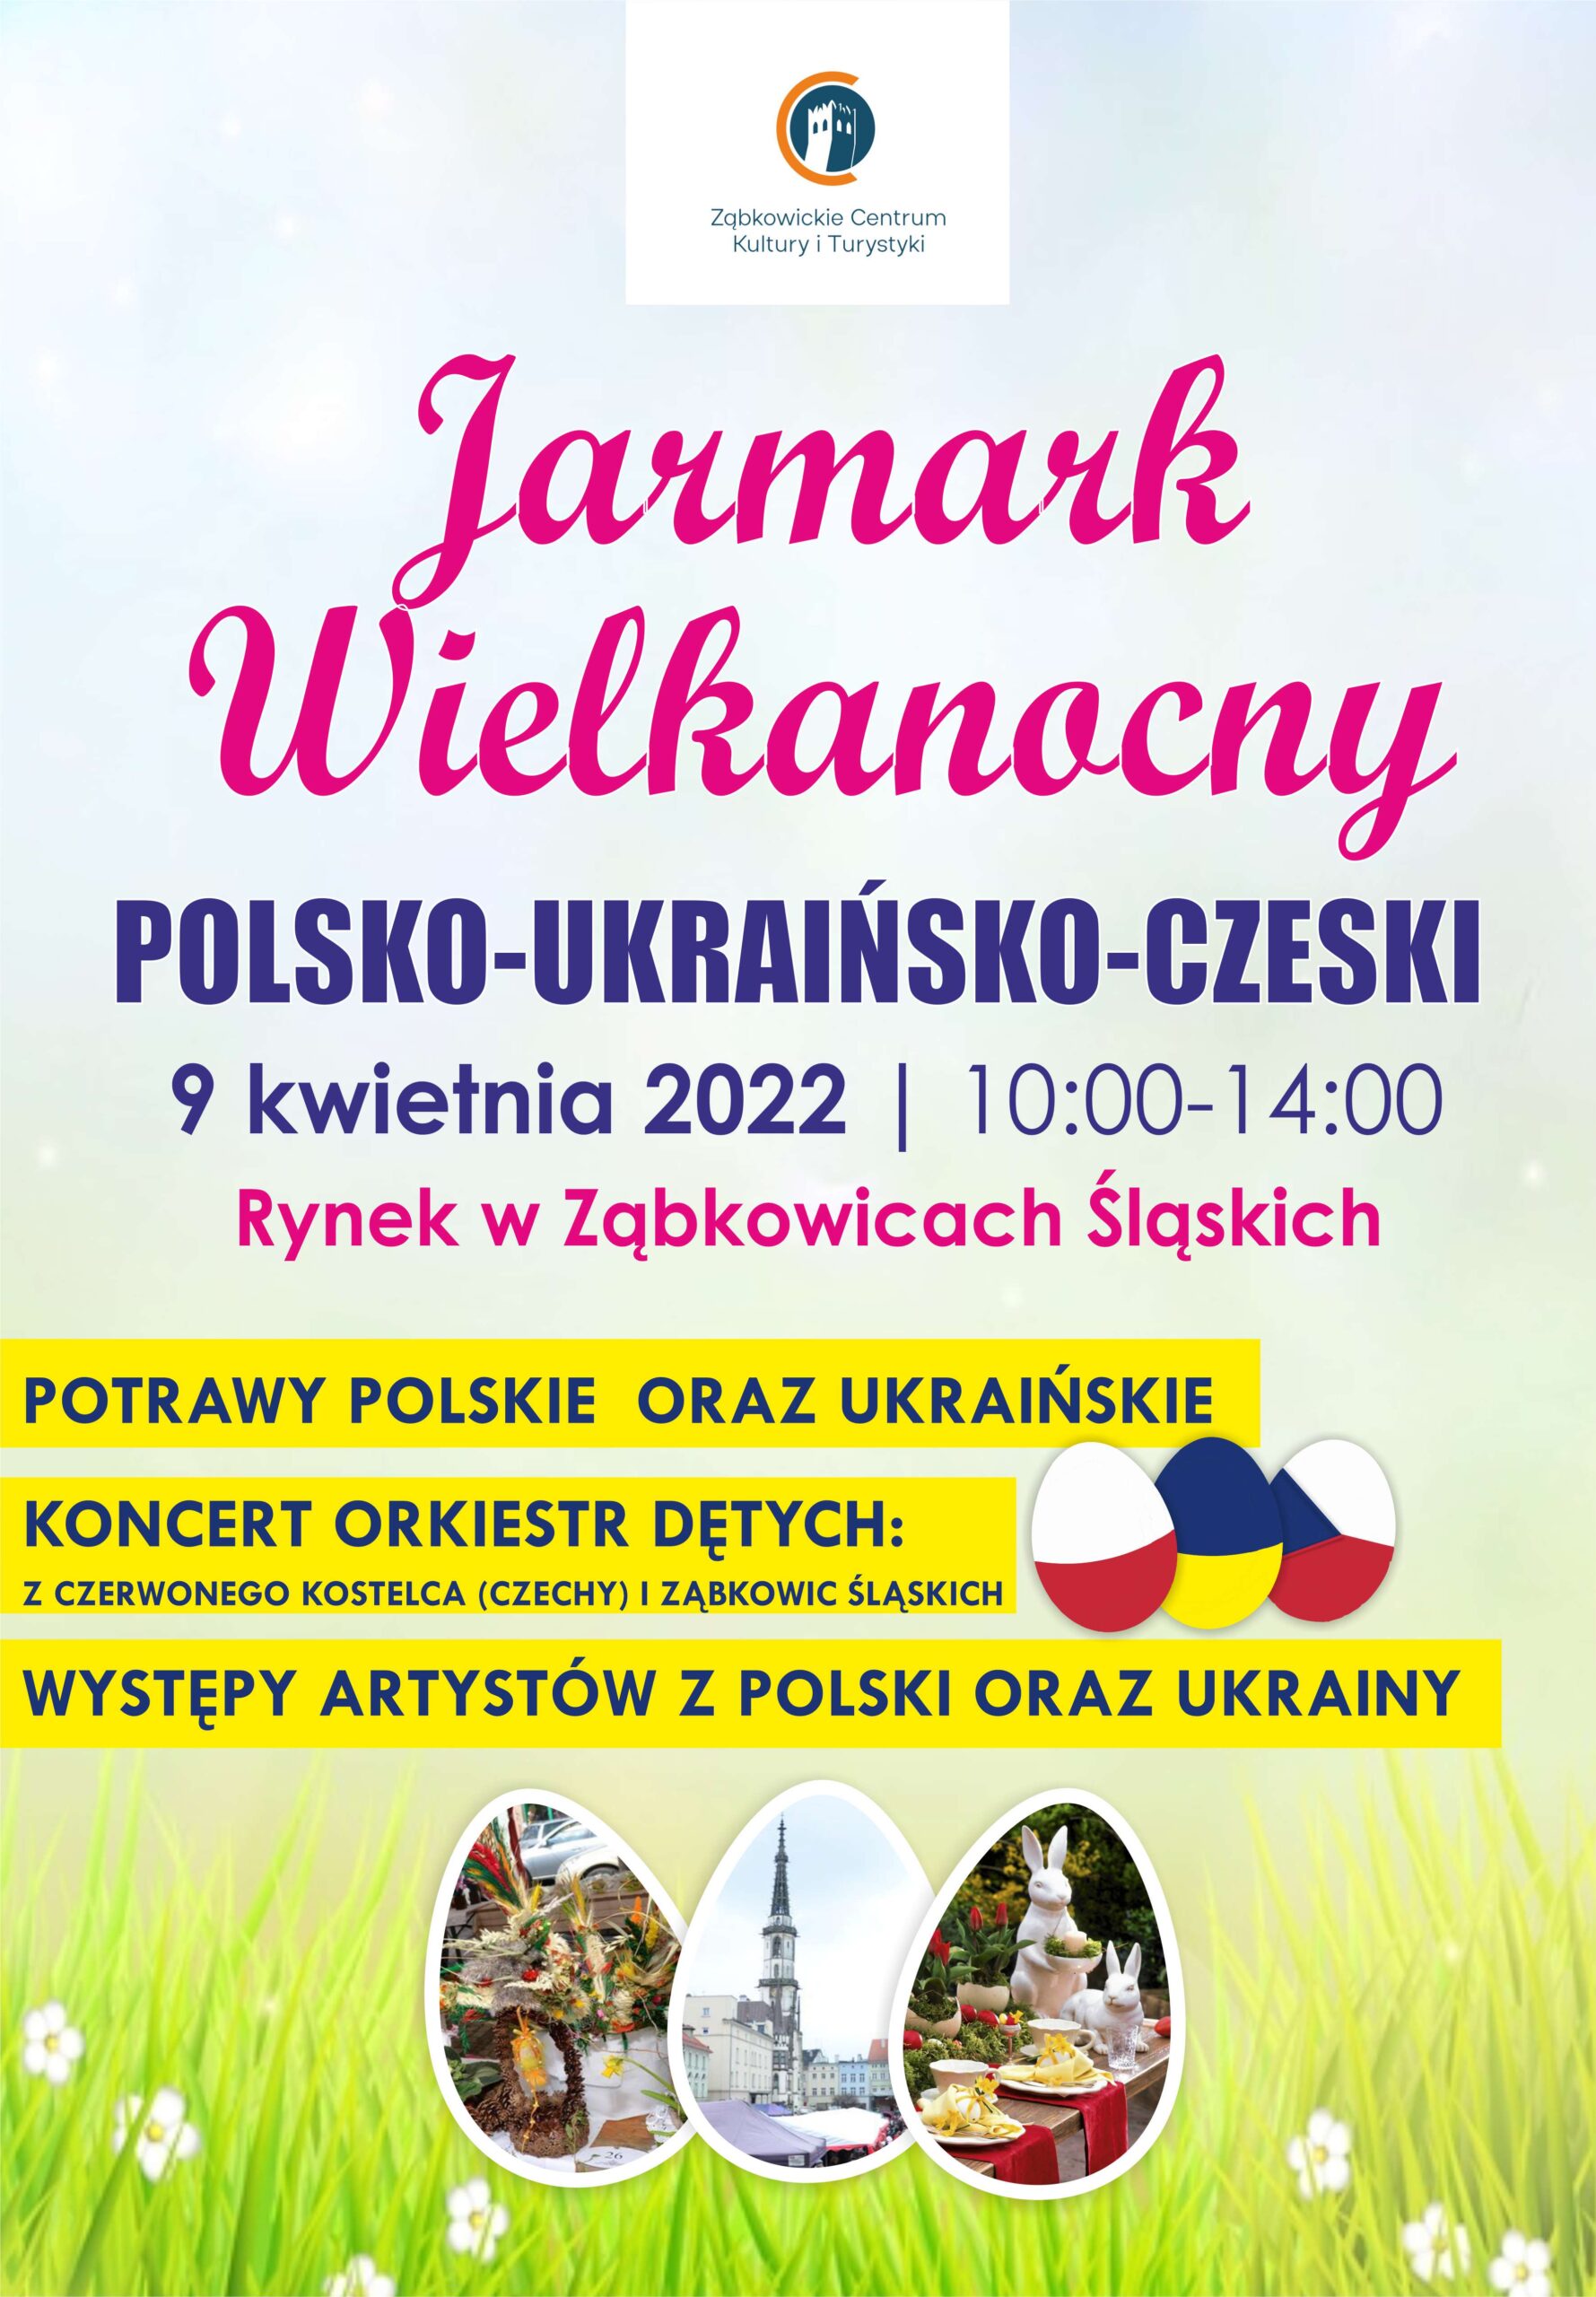 JARMARK WIELKANOCNY POLSKO-UKRAIŃSKO-CZESKI 9 kwietnia 2022 godziny od 10 do 14 RYNEK W ZĄBKOWICACH ŚLĄSKICH